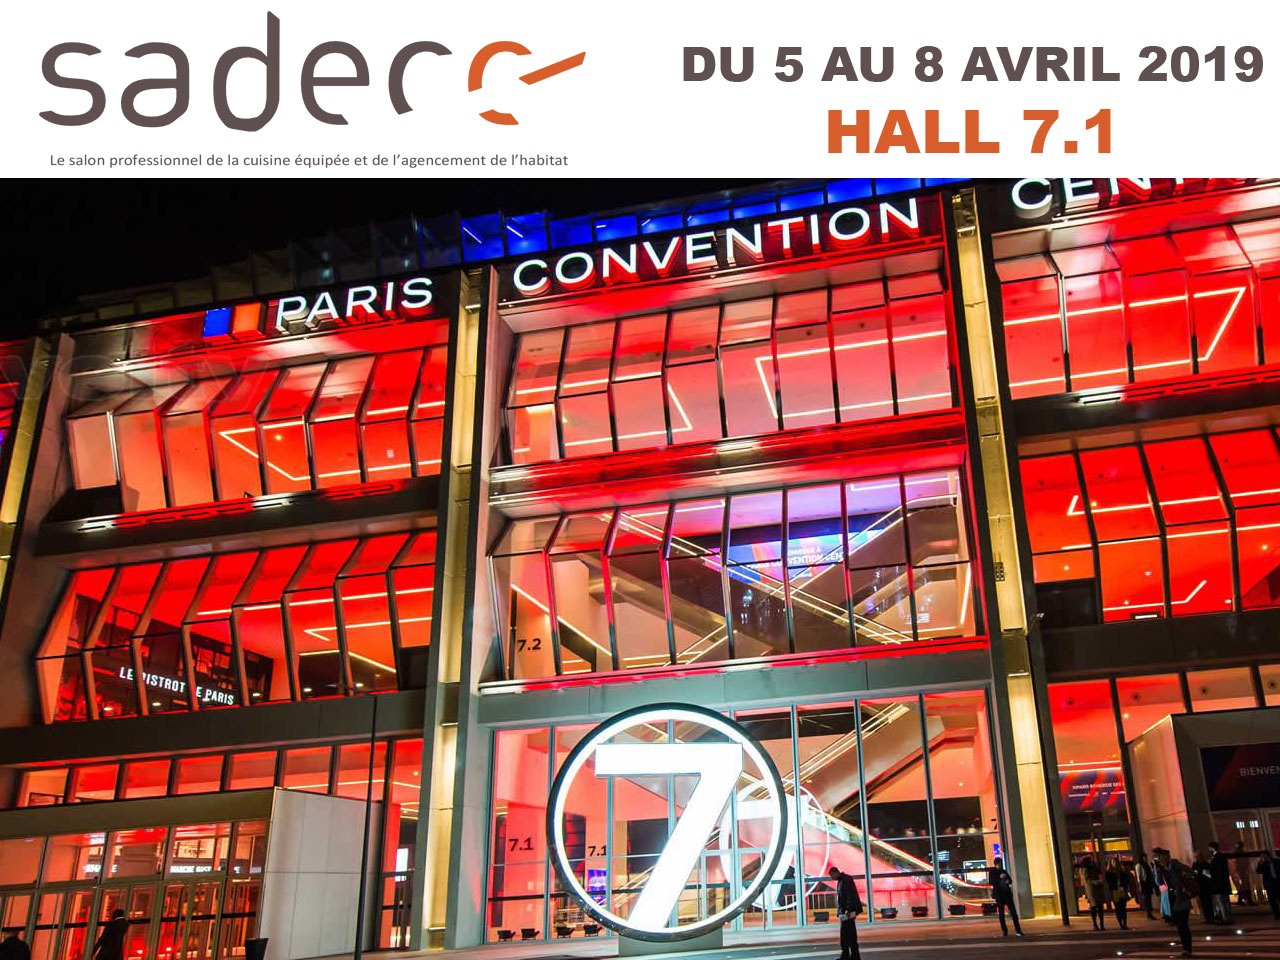 Le Sadecc pour sa 7ème édition s’invite à  Paris, et les exposants sont au rendez-vous !